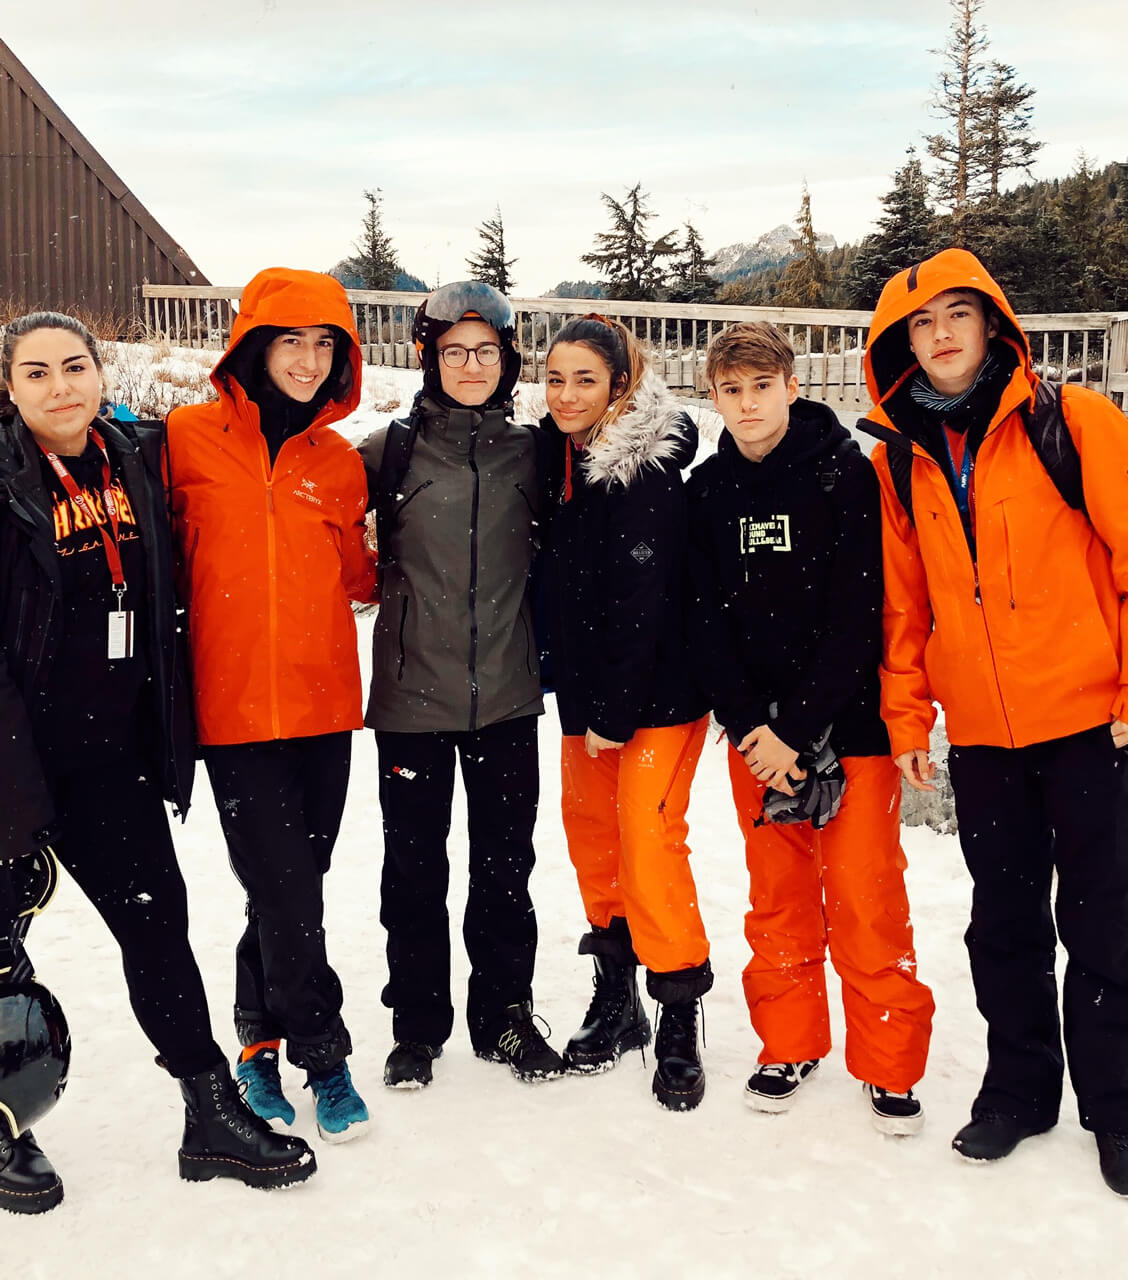 Grupo de adolescentes bien equipados para la nieve, en exterior nevado